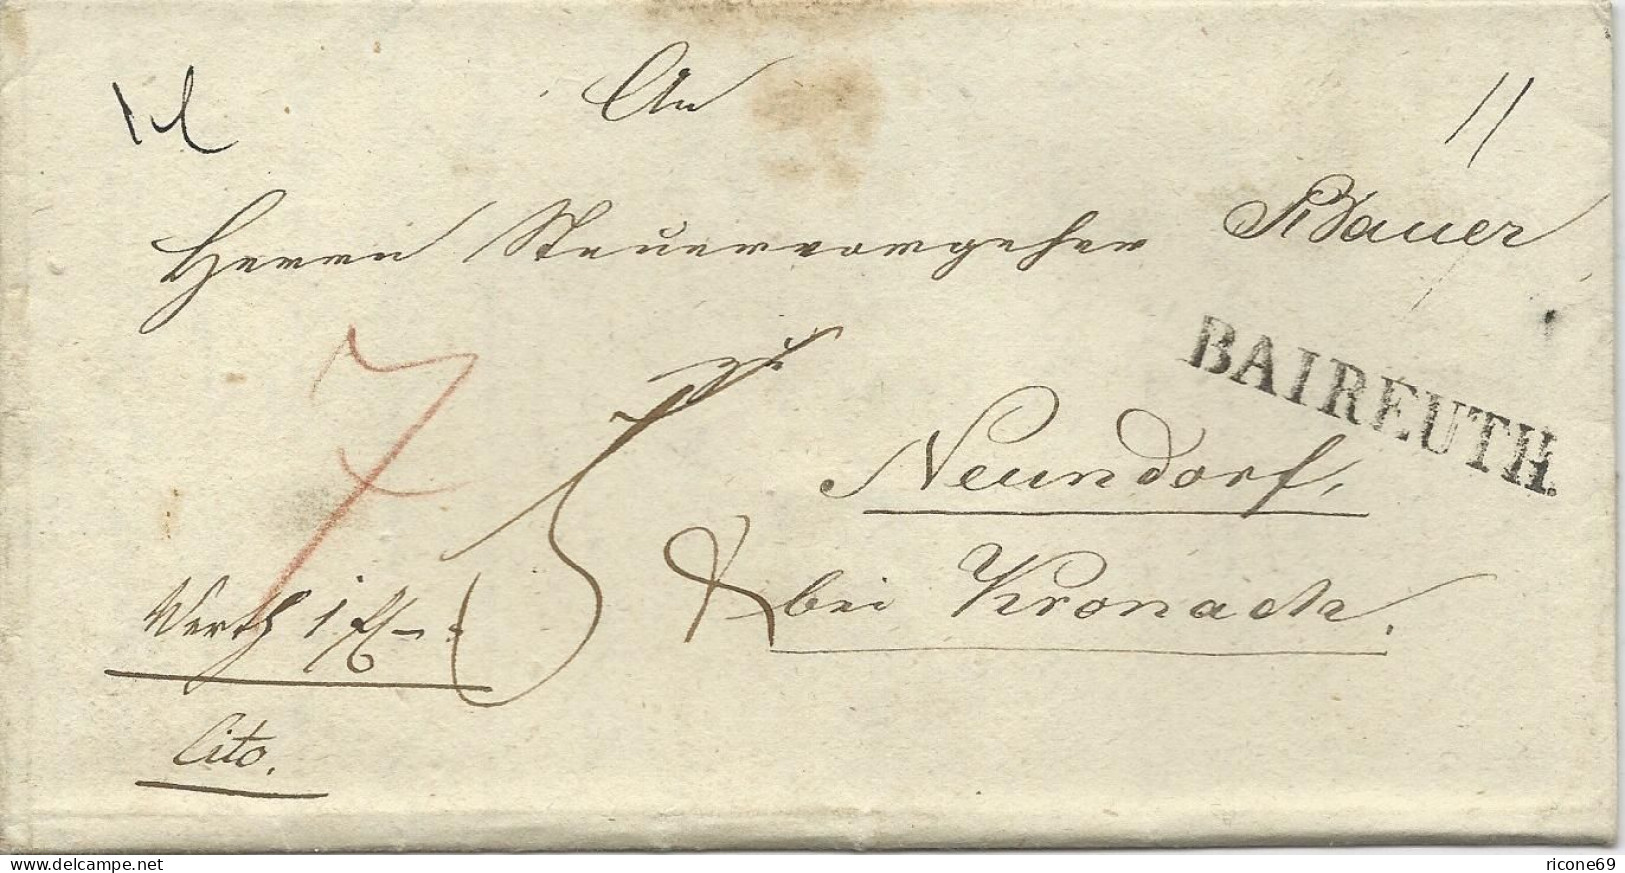 Bayern 1844, L1 Bayreuth Auf Wert Brief M Extra Botenlohn N. Neundorf. #1495 - Cartas & Documentos